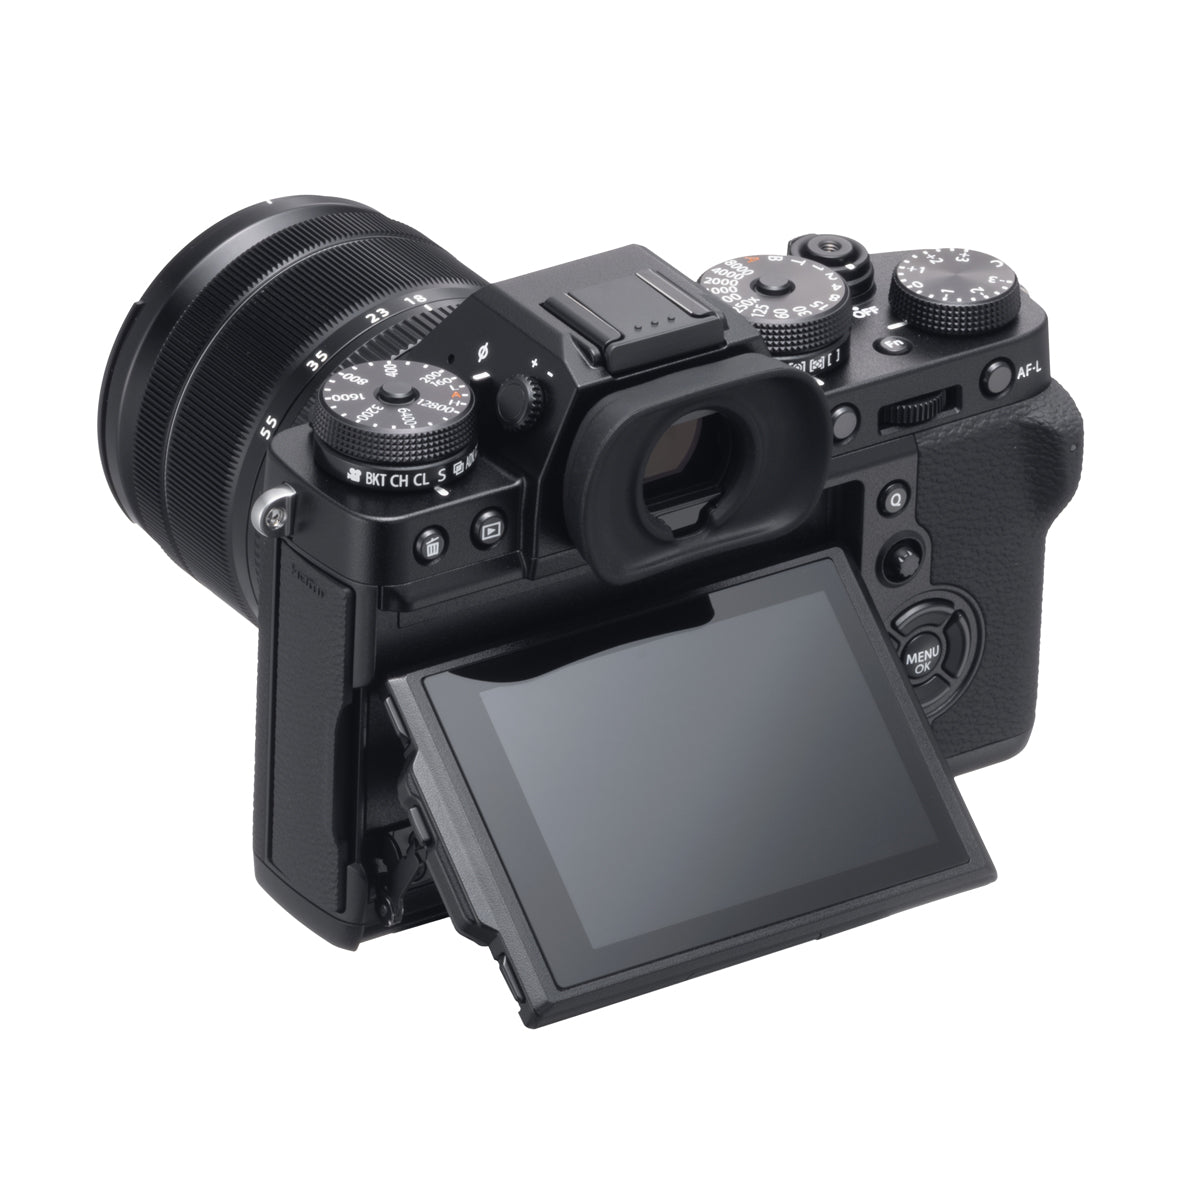 Fujifilm X-T3 Digital Camera w/18-55mm Lens Kit (Silver)